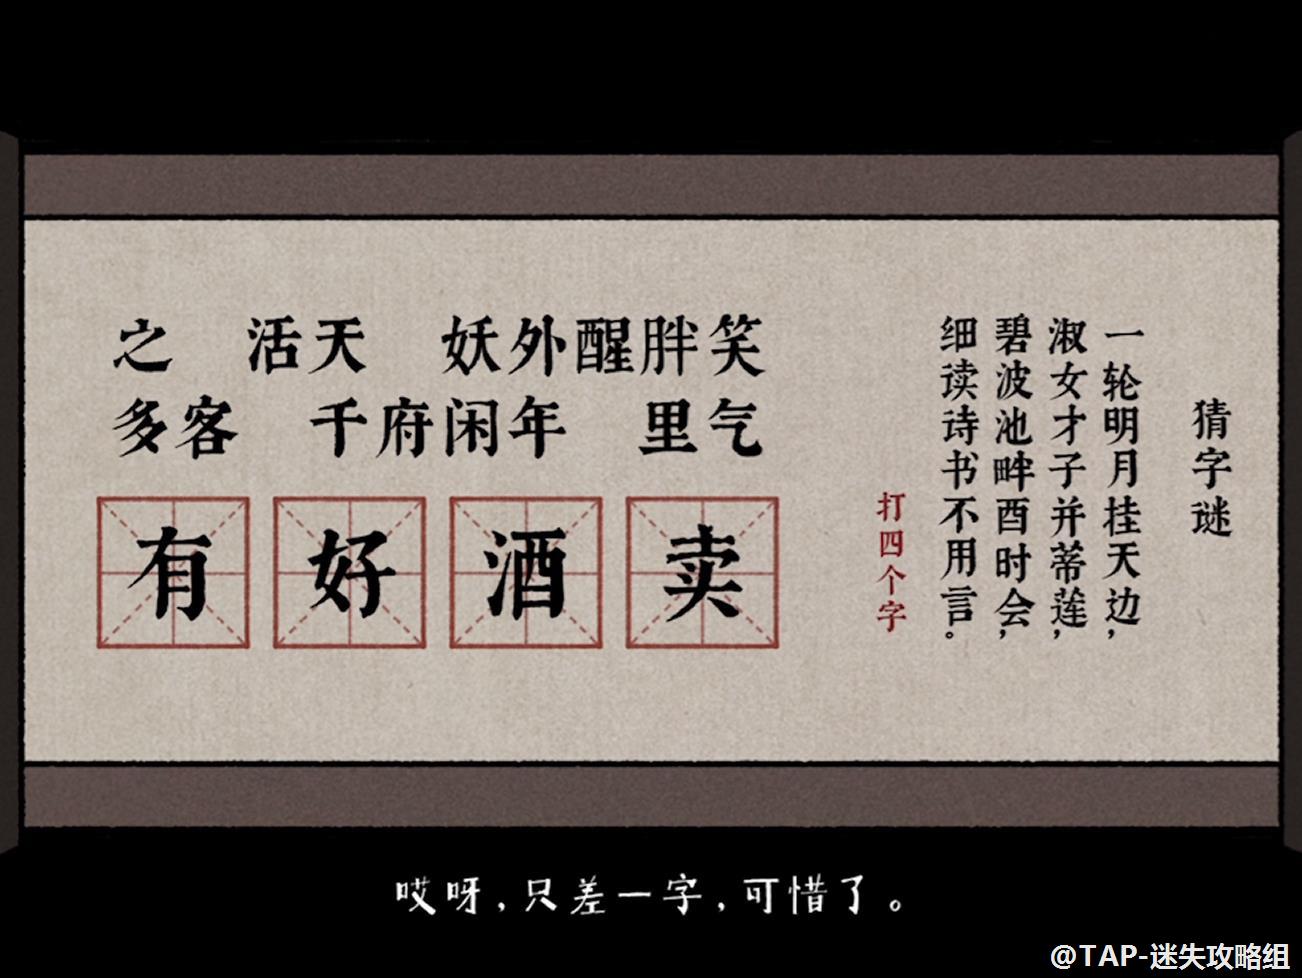 《古镜记》攻略杭州部分（第一部分）【迷失攻略组-TapTap独家首发】 - 第1张